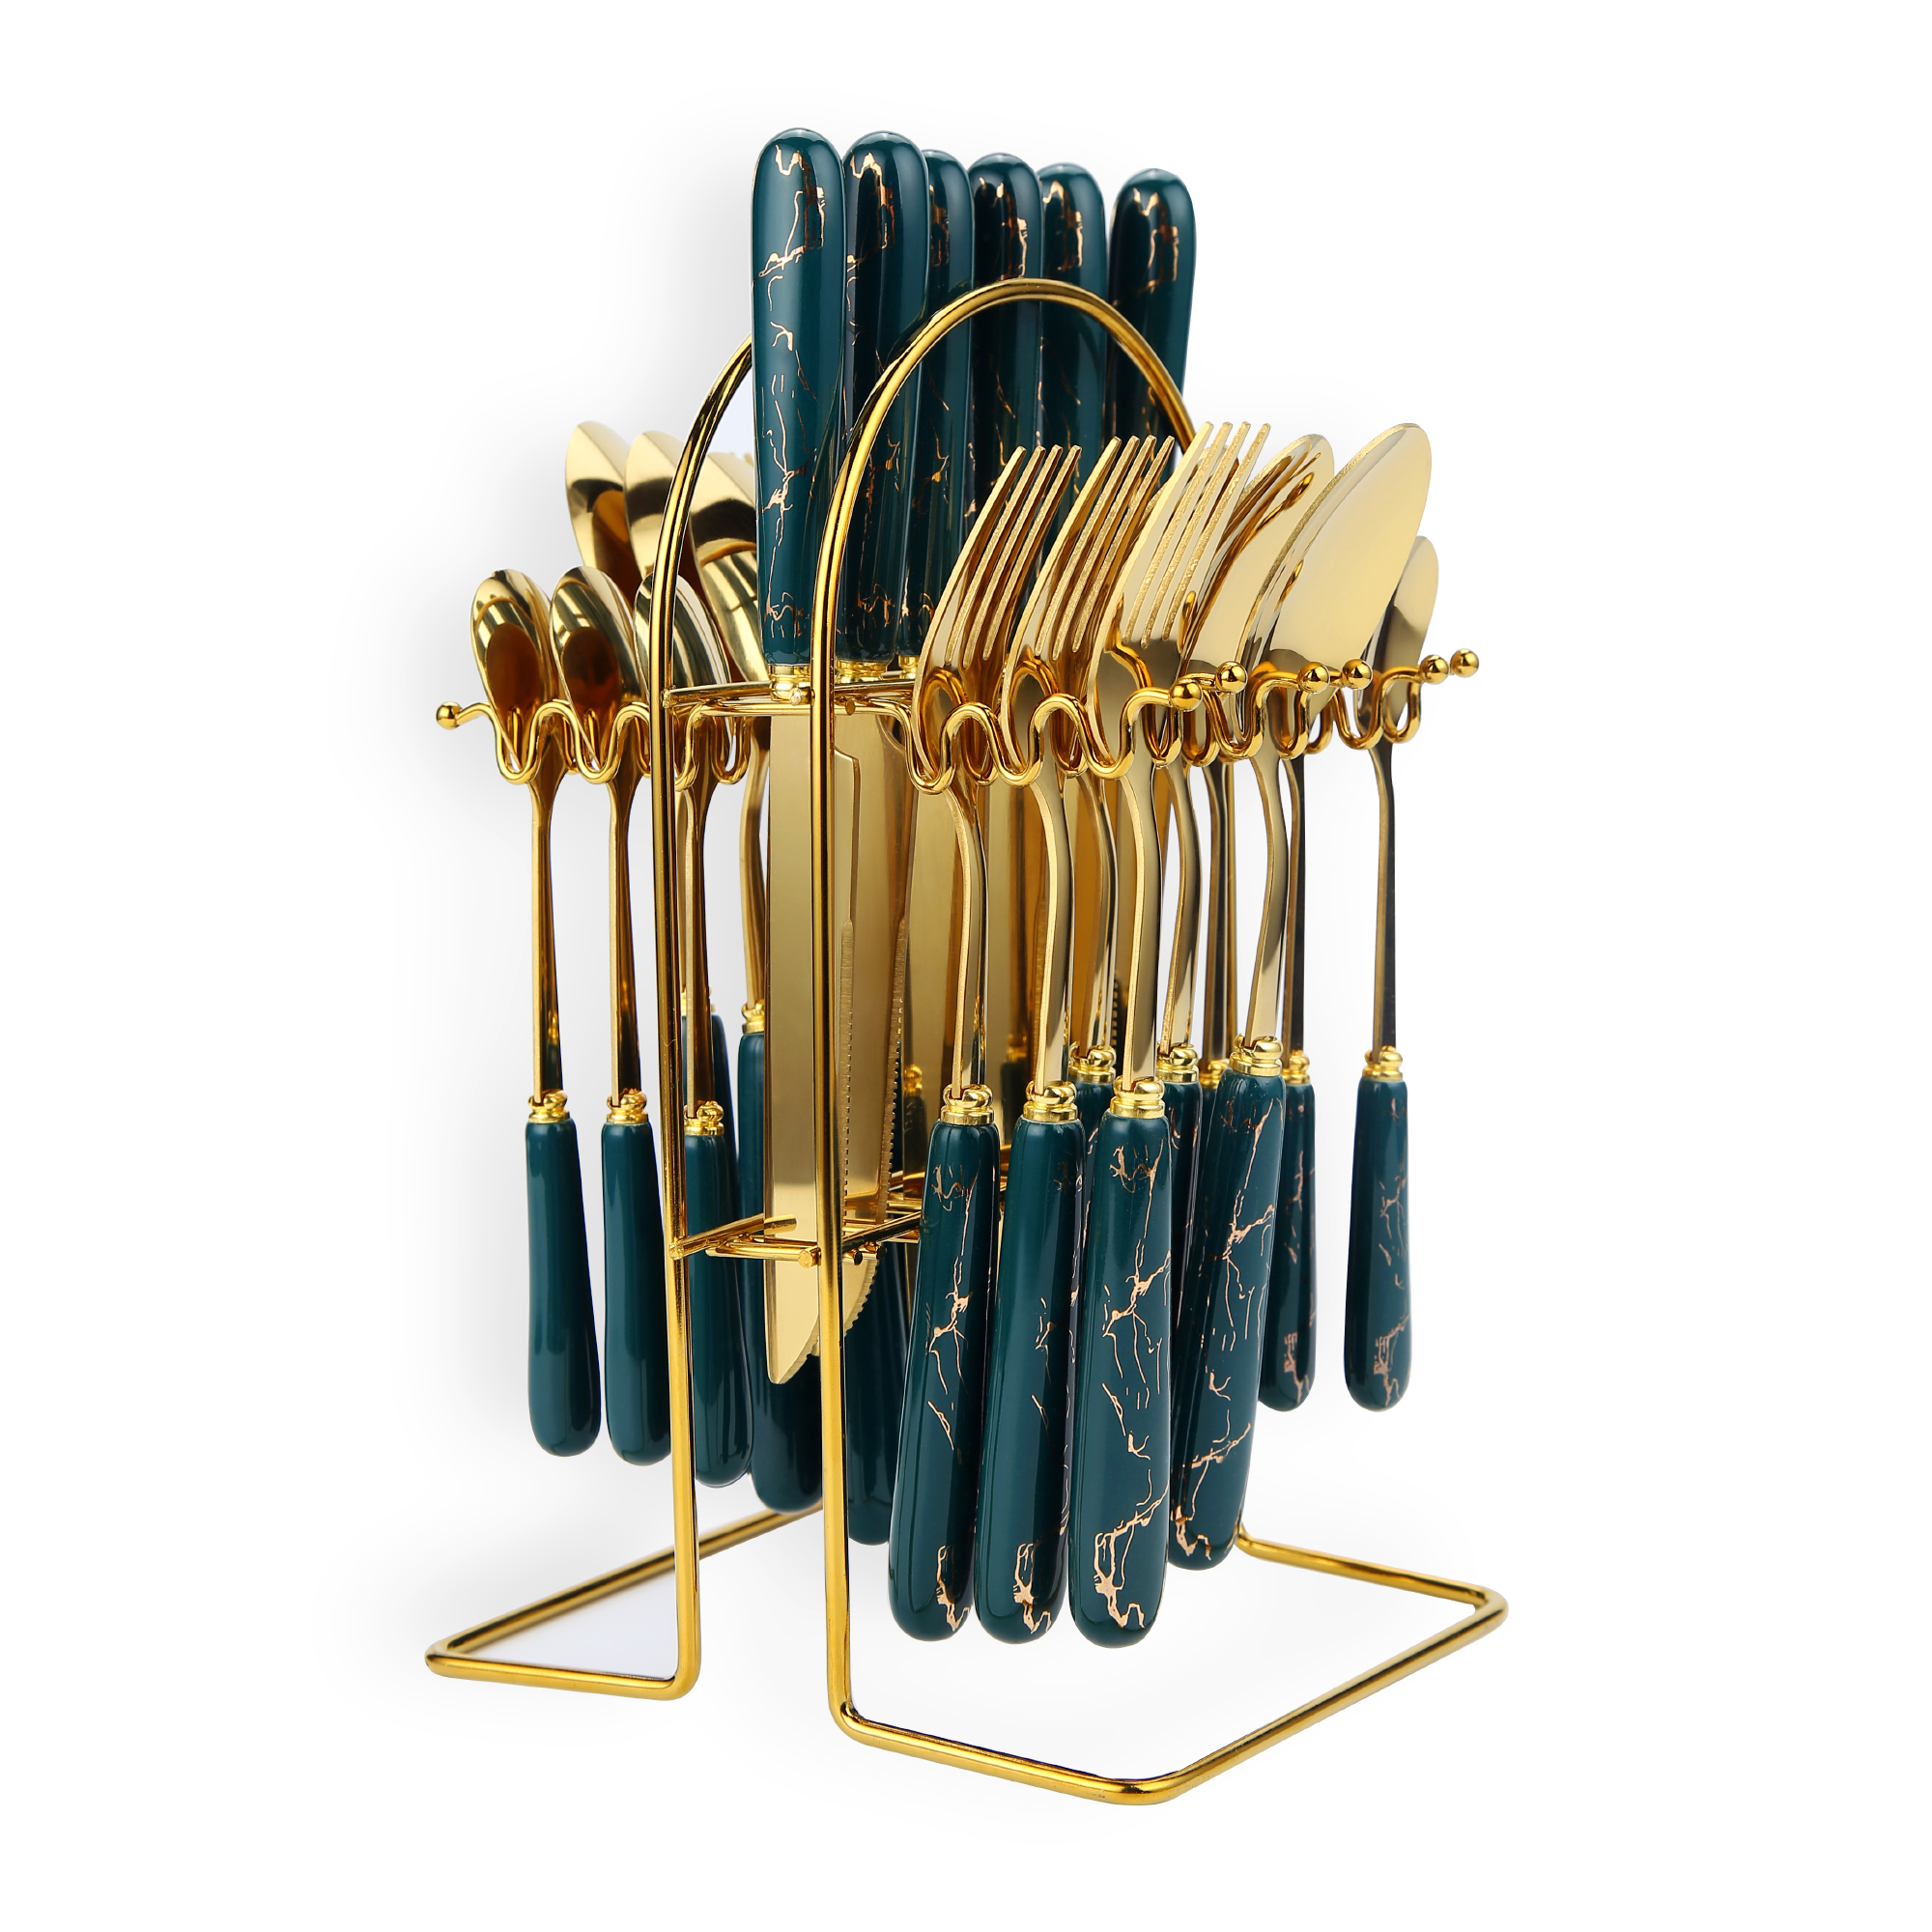 24 قطعة مجموعة أدوات المائدة الفولاذ المقاوم للصدأ ، مع حامل الأخضر / الذهب